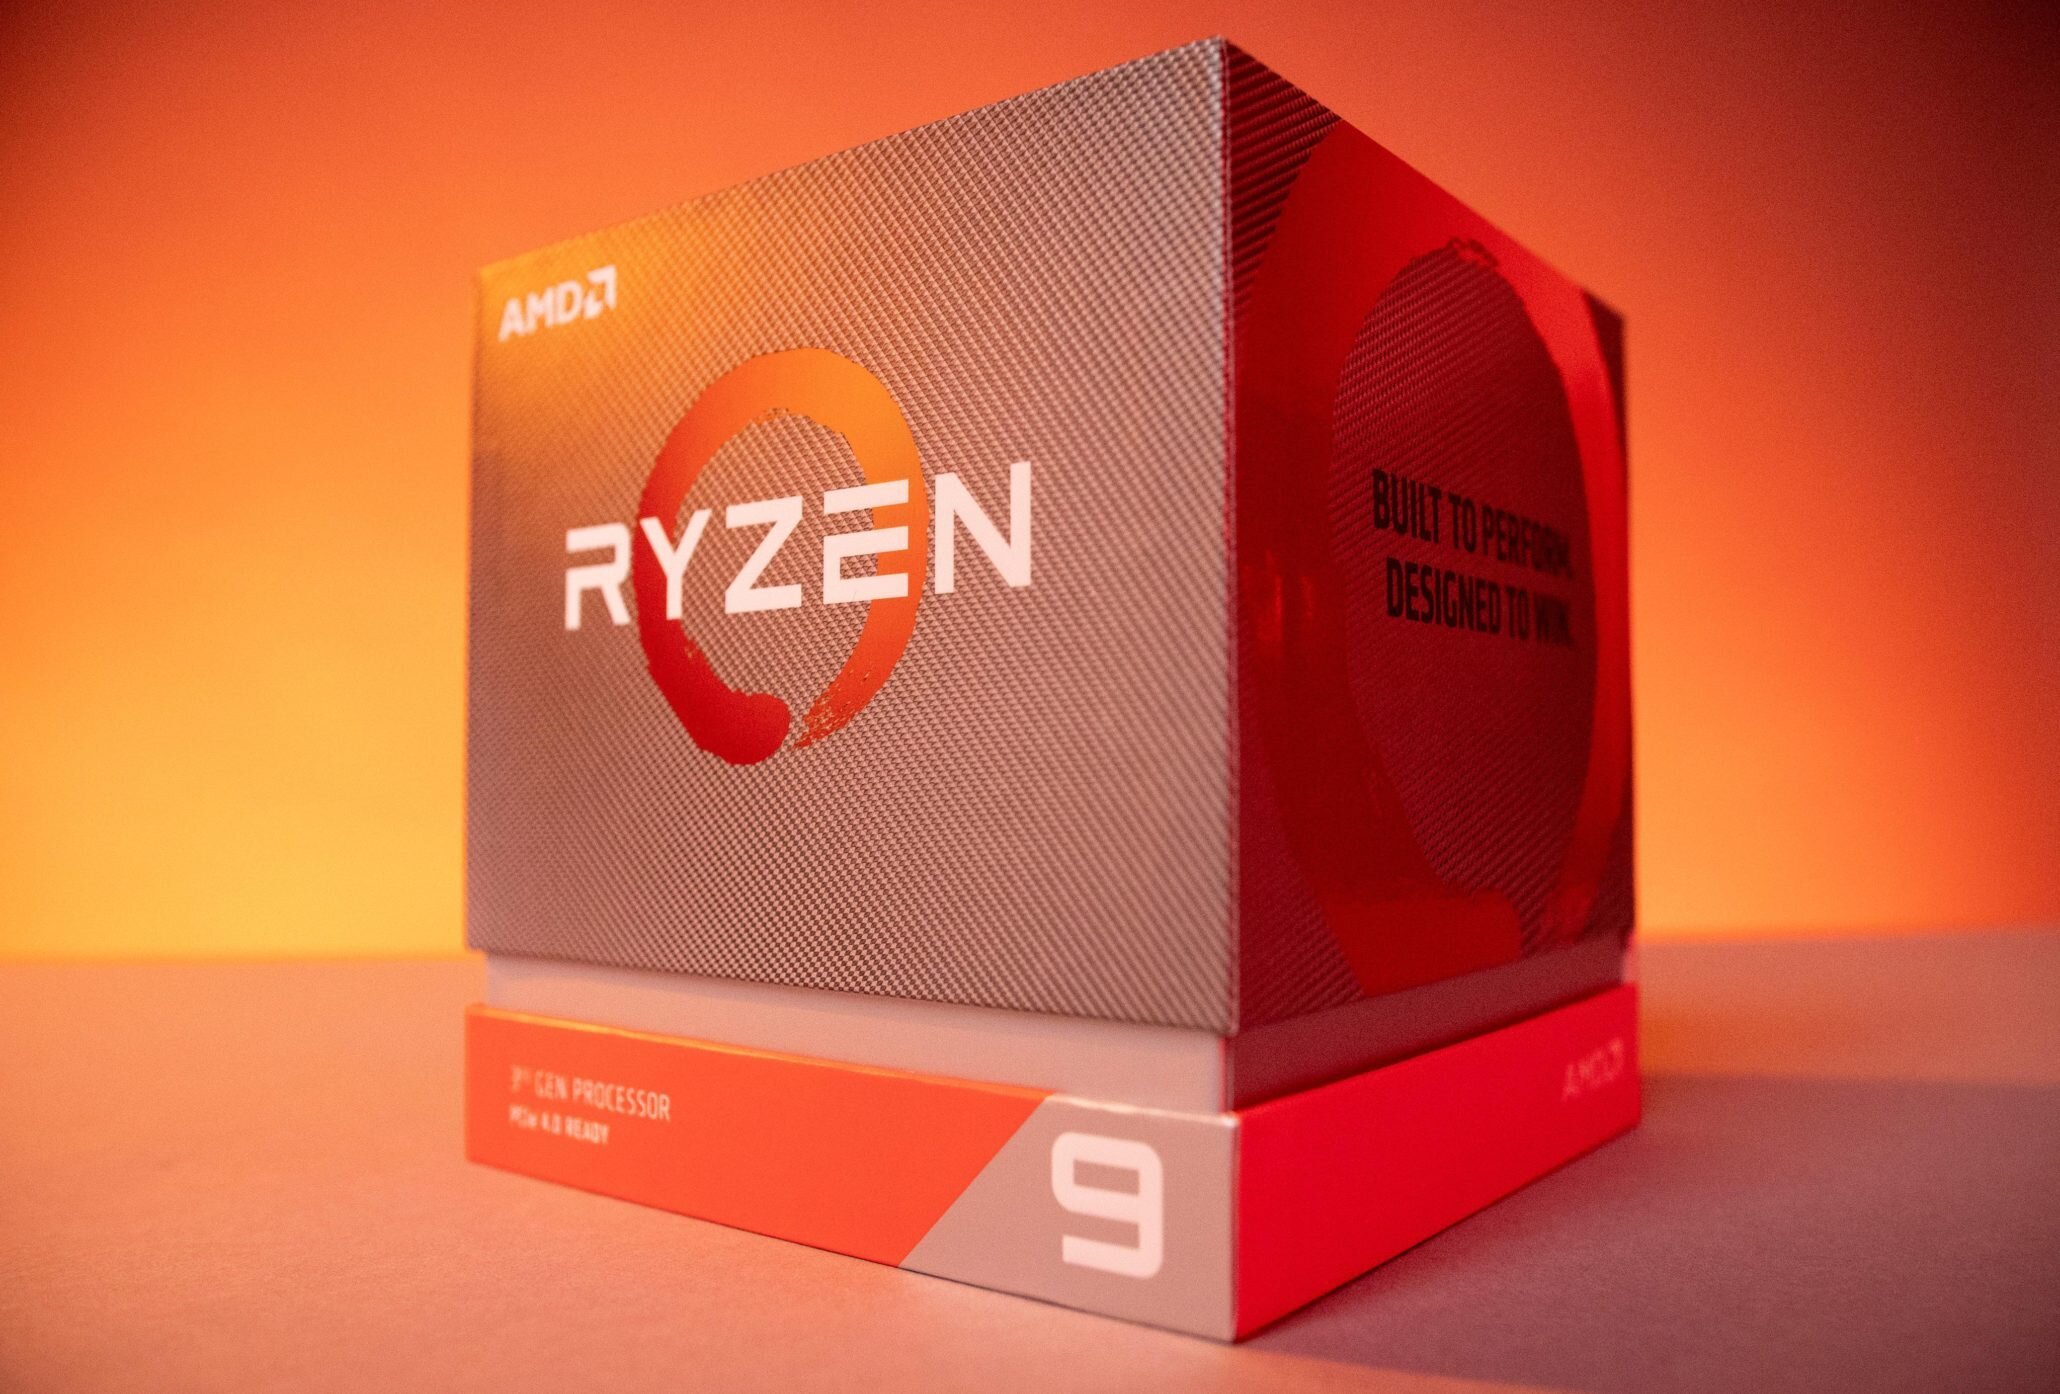 Η AMD κάνει αλλαγές στα roadmaps της καθώς προετοιμάζει τις αρχιτεκτονικές RDNA2 και Zen 3